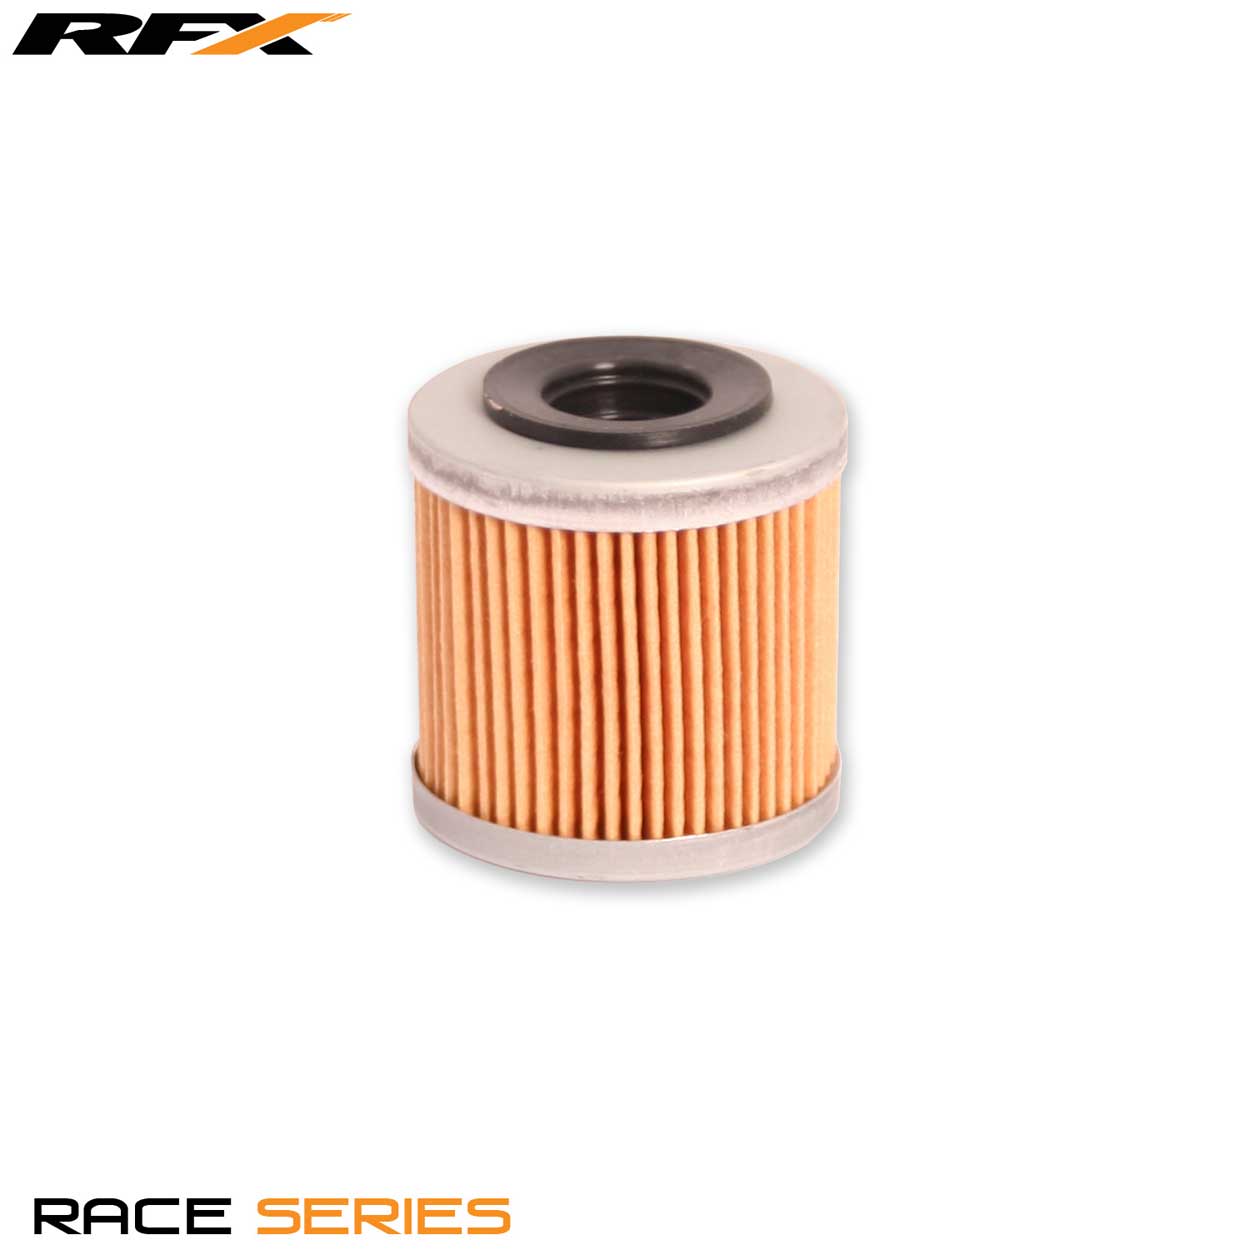 RFX Race Oil Filter (HF112) Honda CRF250L 13-16, XR250 90-04, XR400/650 93-16,  Kawasaki KXF450 06-15